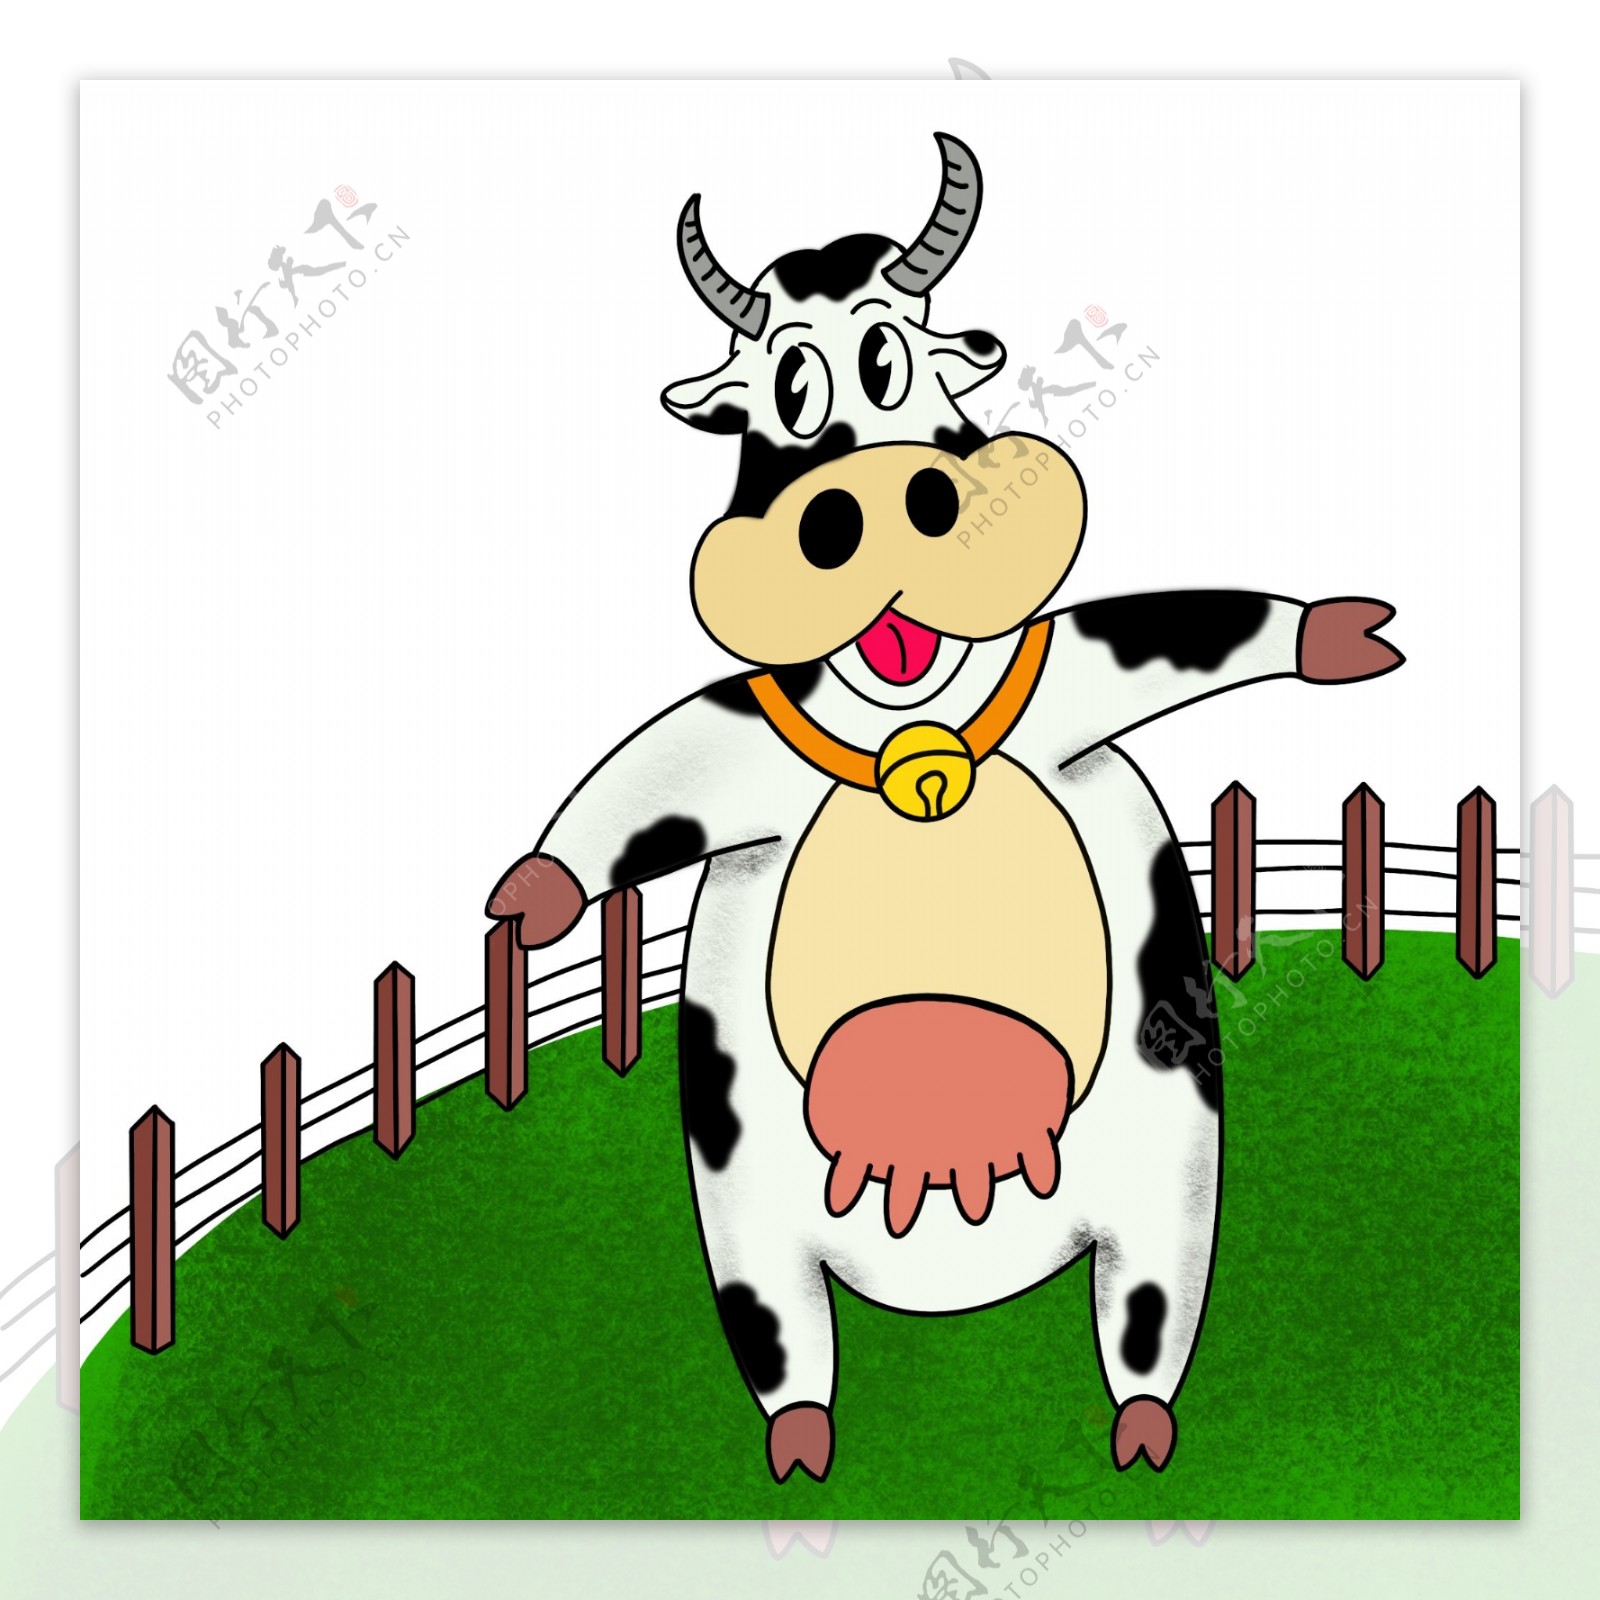 围栏里带铃铛的奶牛